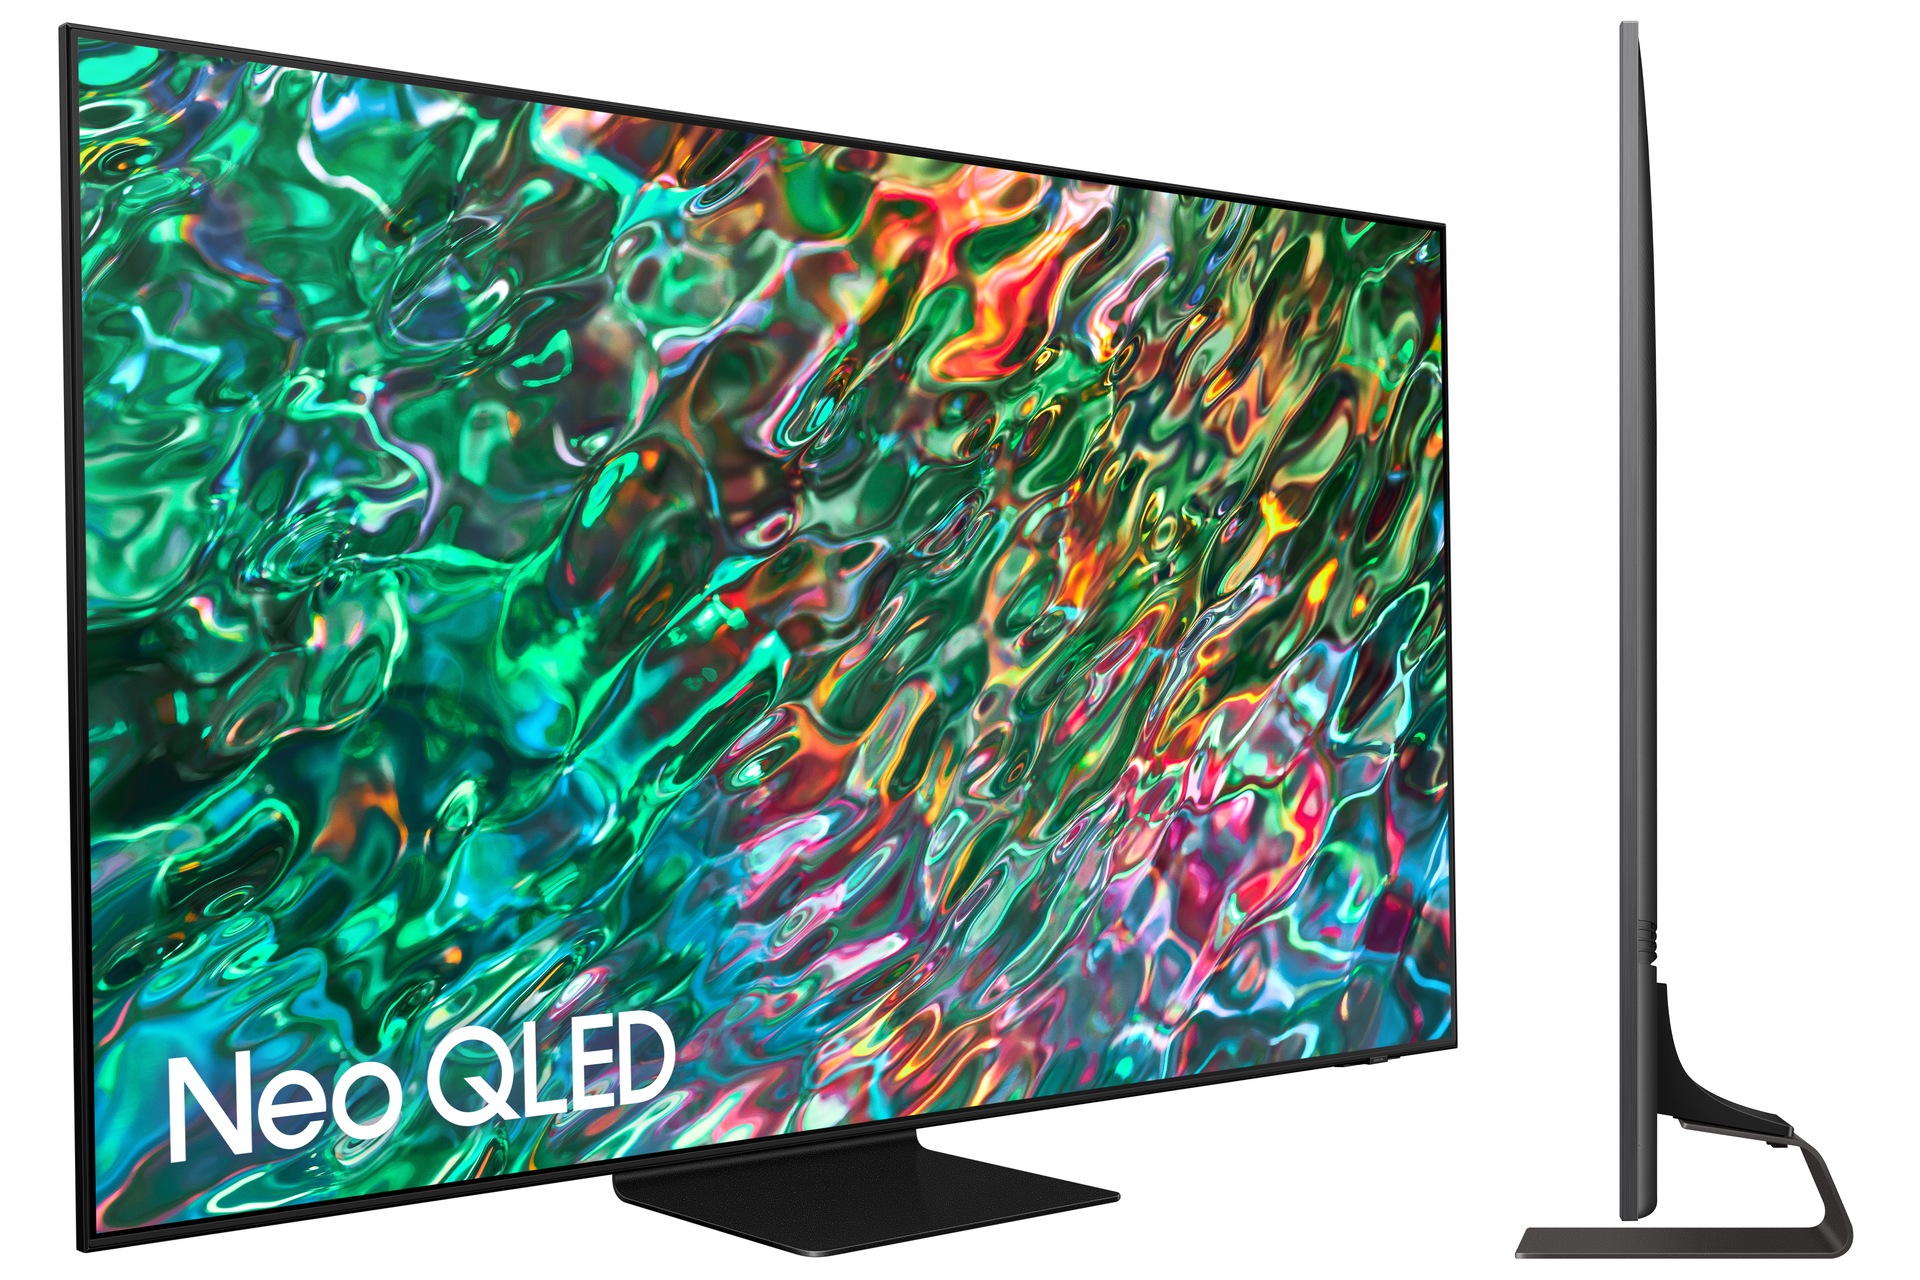 Ofertón: Samsung tiene esta smart TV Neo QLED de 65 pulgadas con